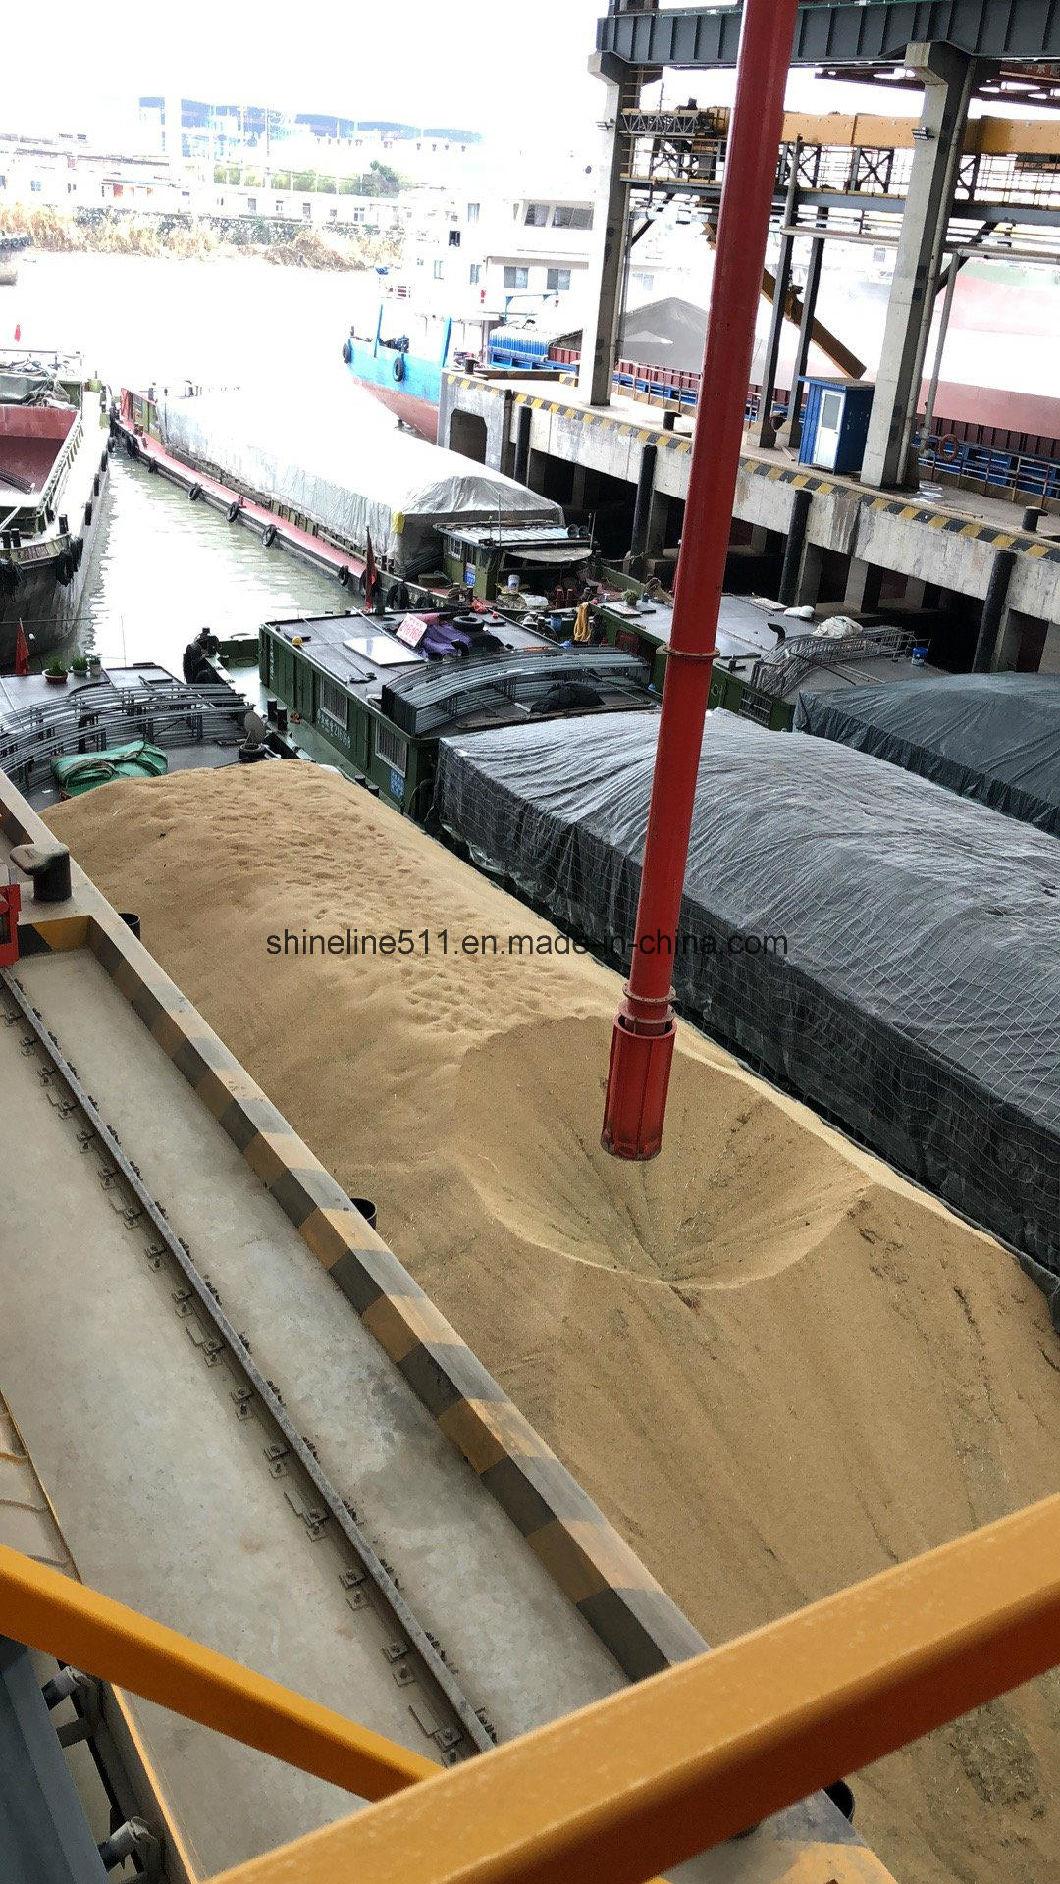 Xiangliang Brand Carbon Steel Belt Conveyor Price Port Grain Unloader